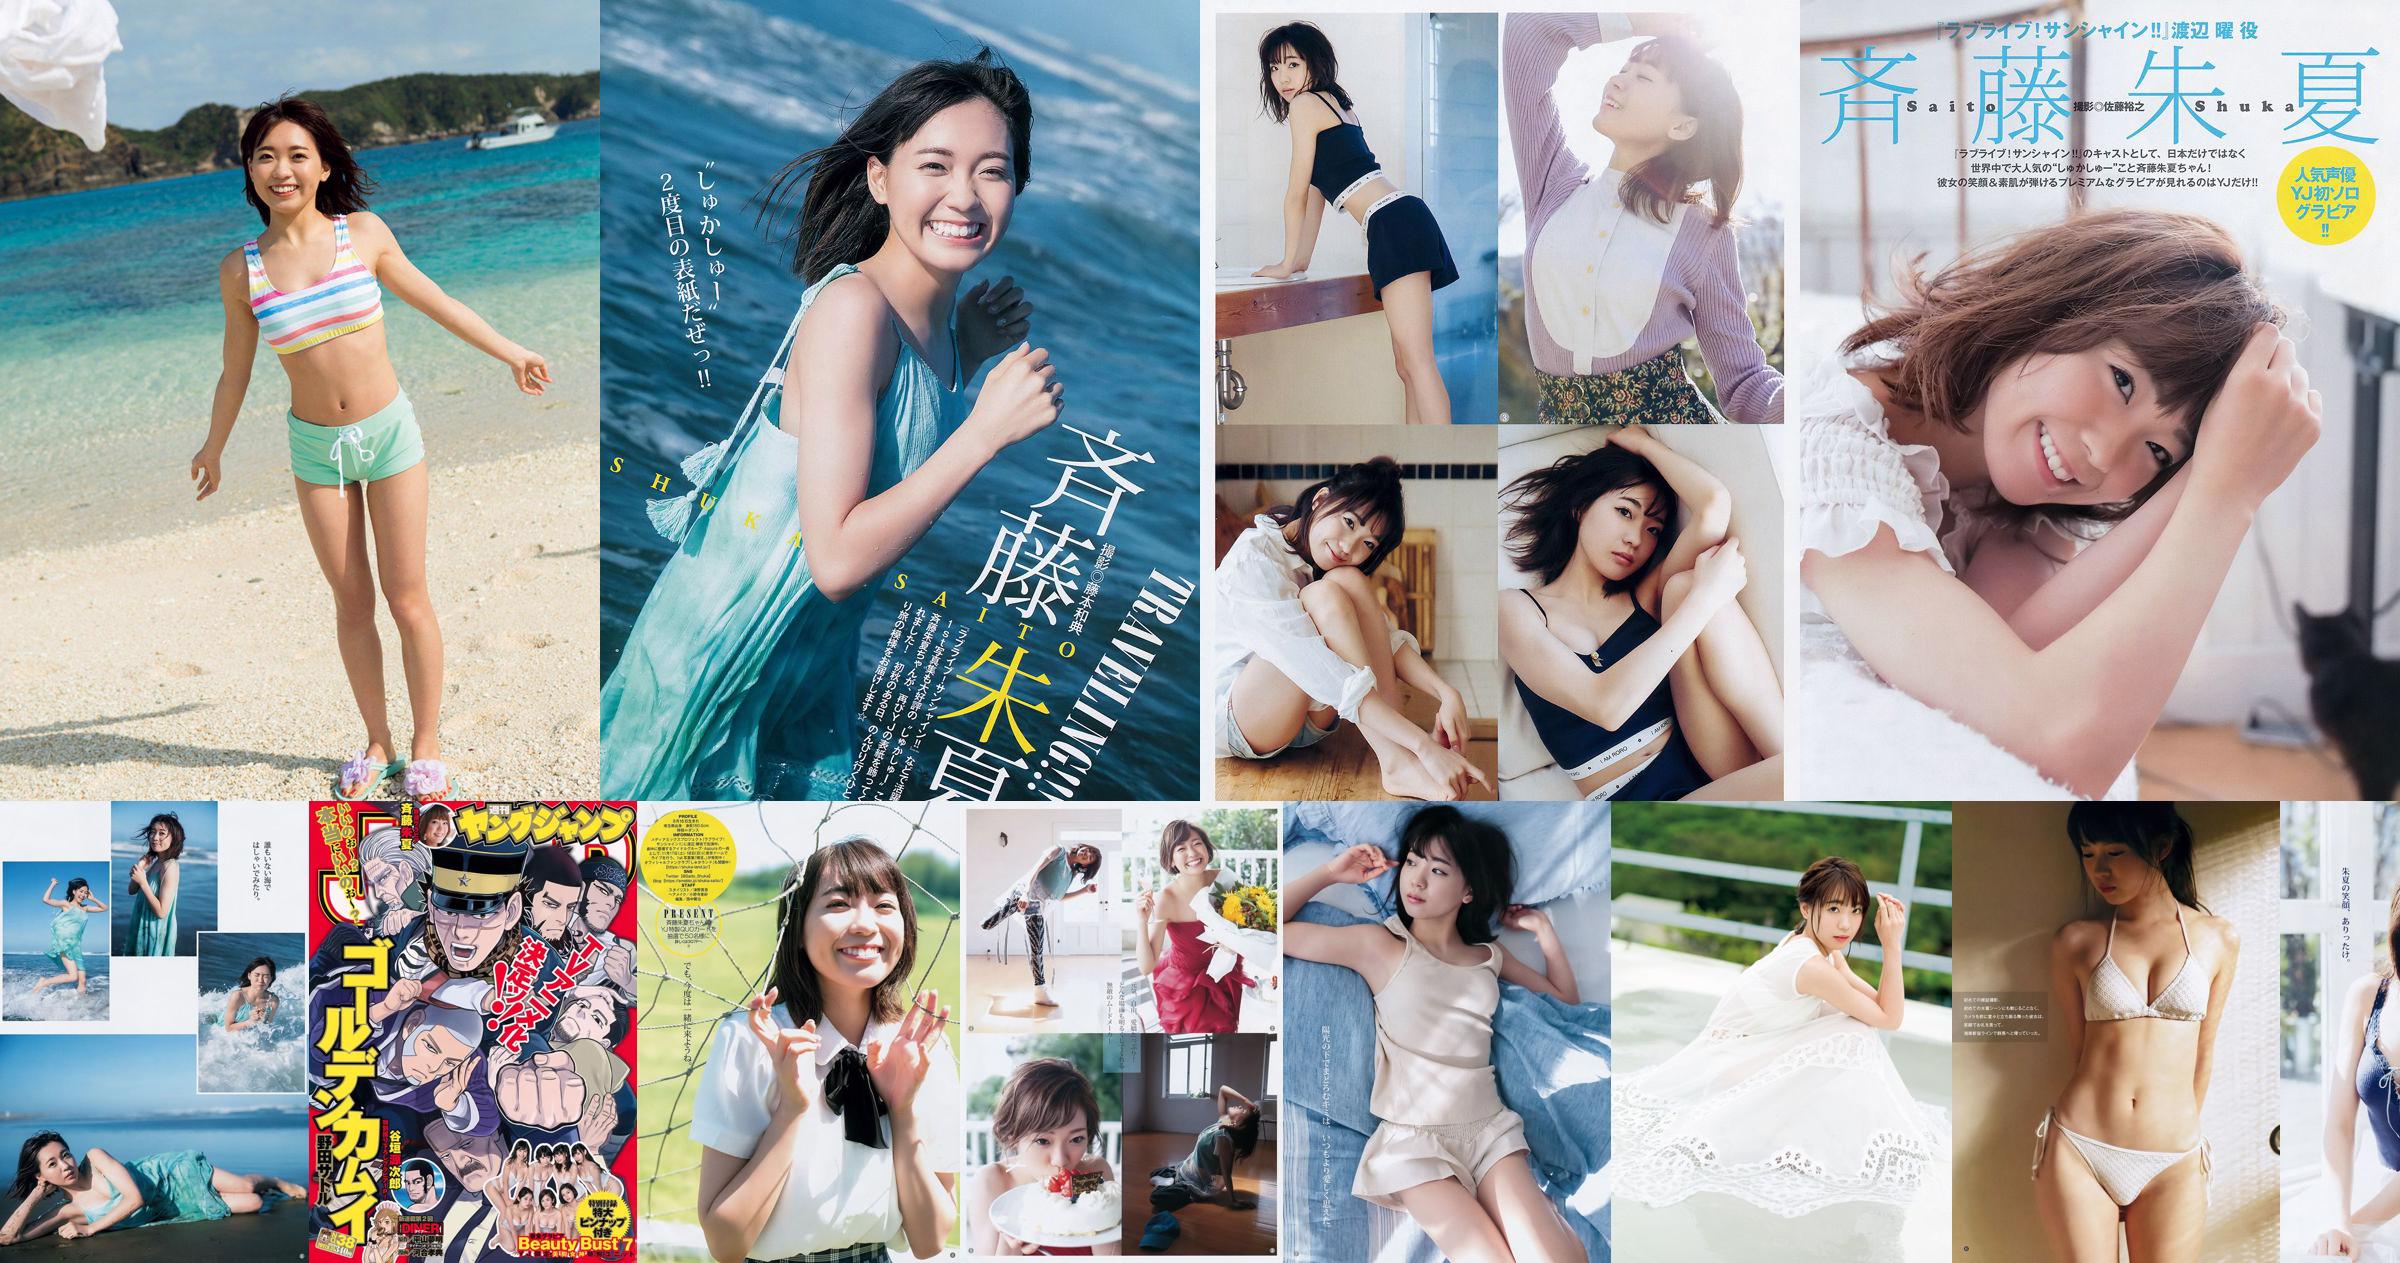 Shuka Saito Beauty Bust 7 [Weekly Young Jump] 2017 No.38 Photo No.d4edc7 Page 1